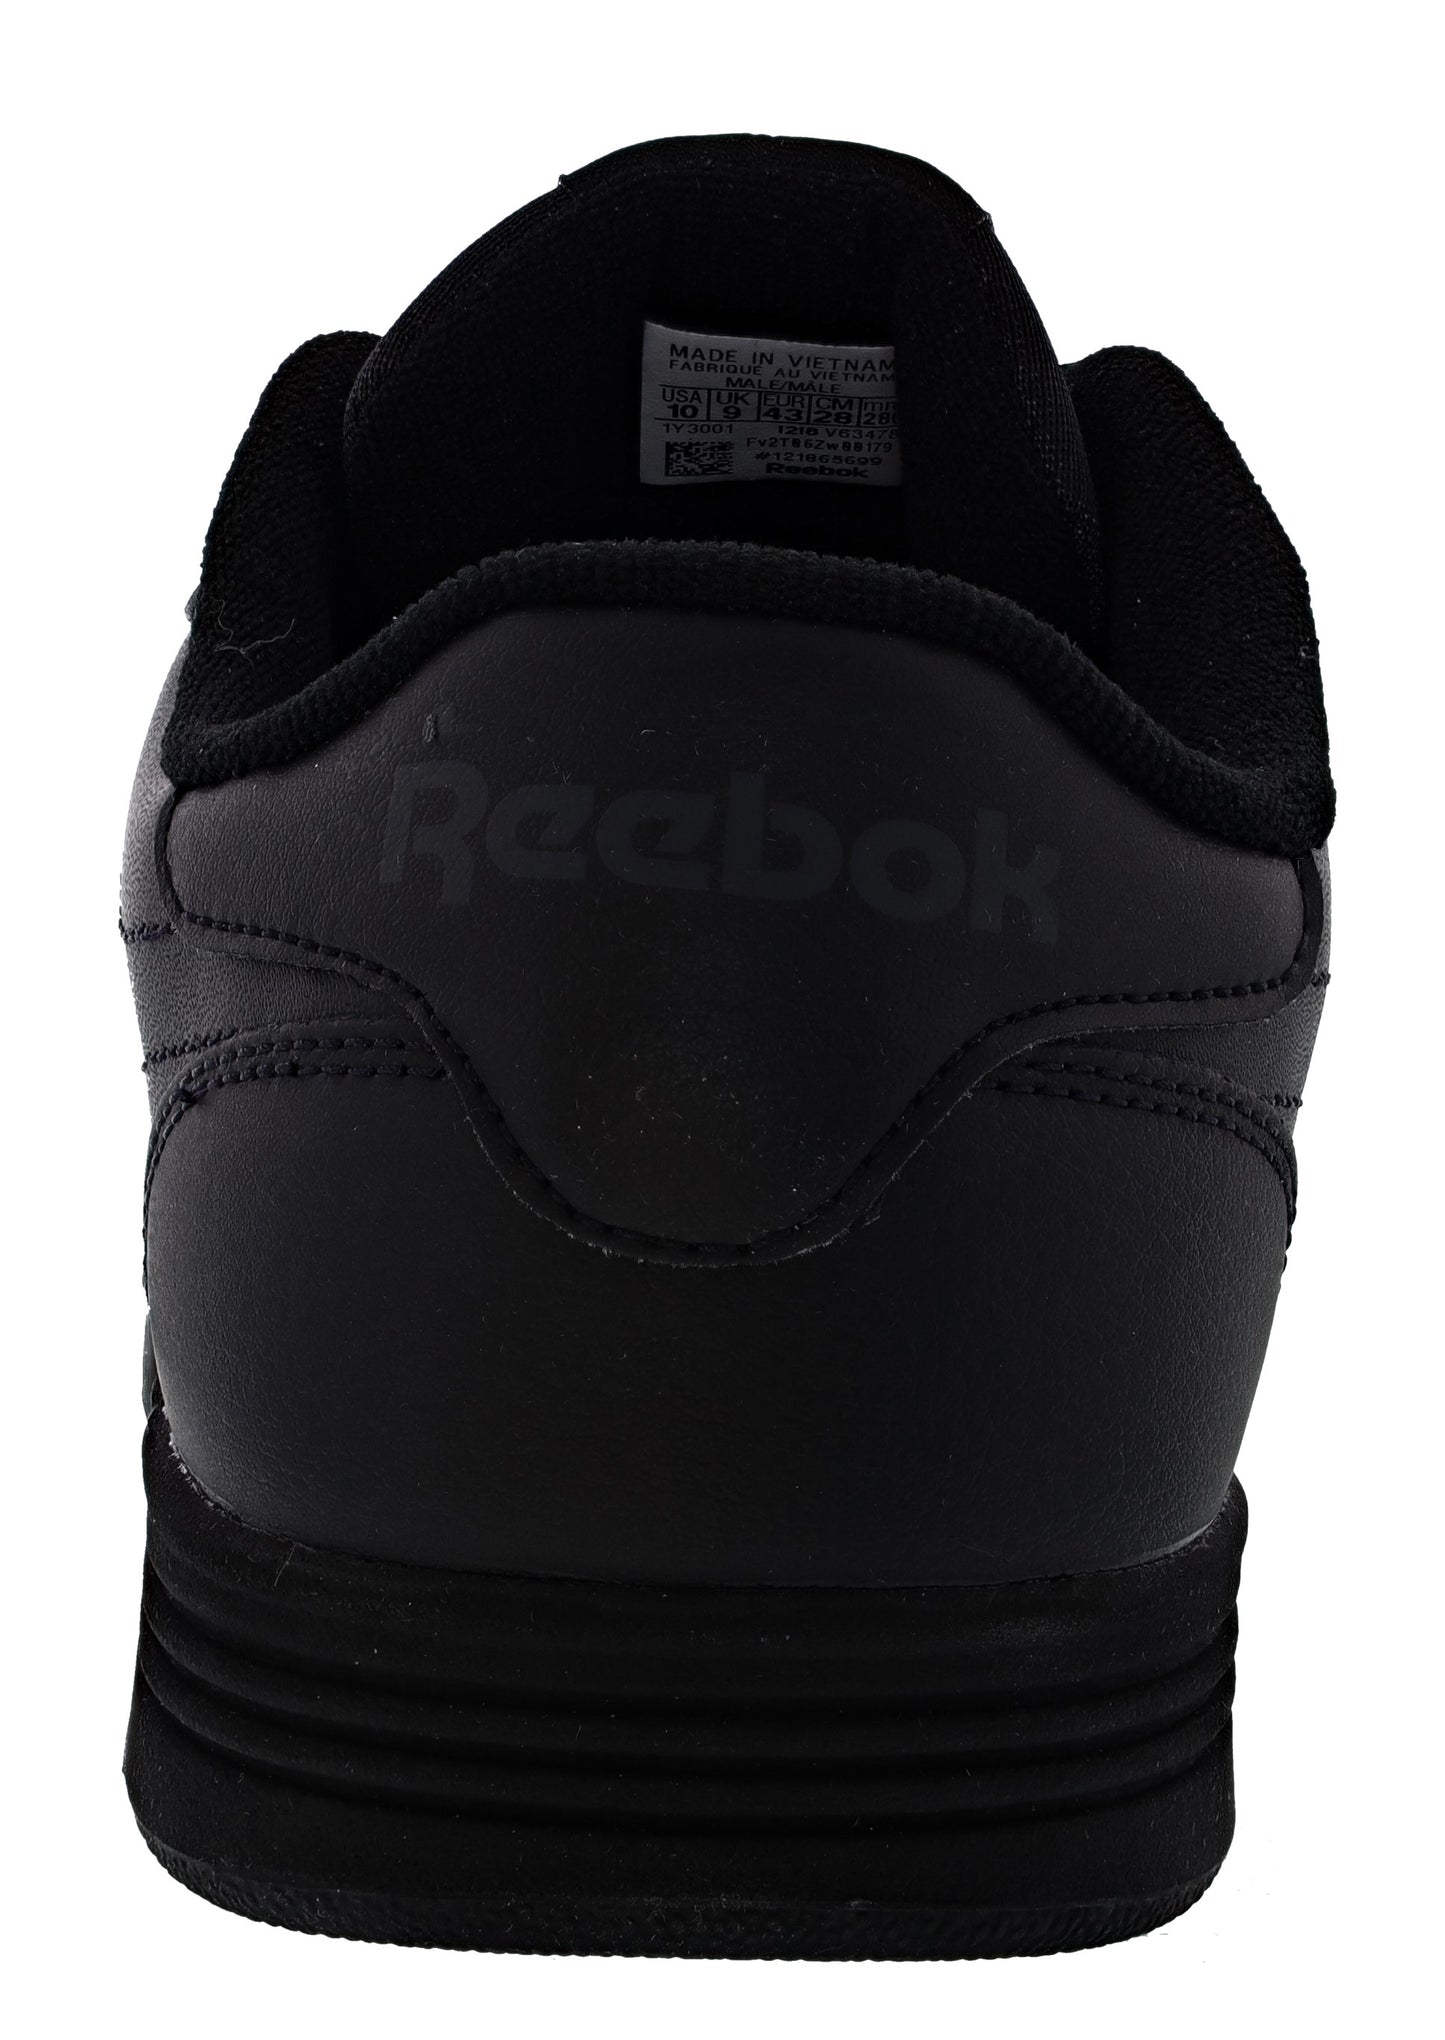 
                  
                    Reebok Club Memt Men Classic Lightweight 4E Wide Walking Sneakers
                  
                